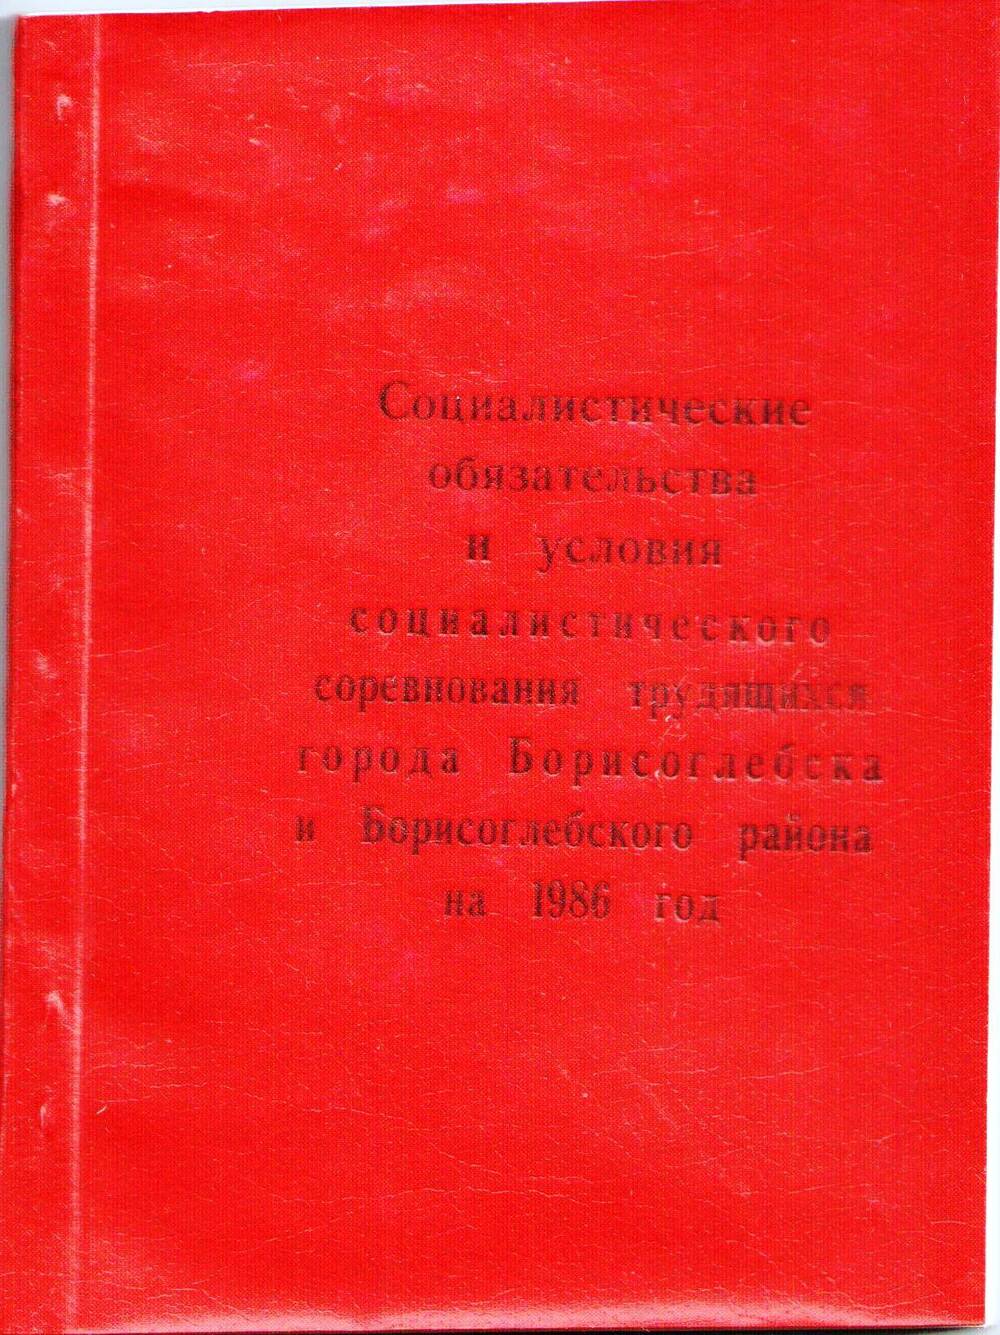 Книга Социалистические обязательства и условия социалистического соревнования трудящихся города Борисоглебска и Борисоглебского района на 1986 год.